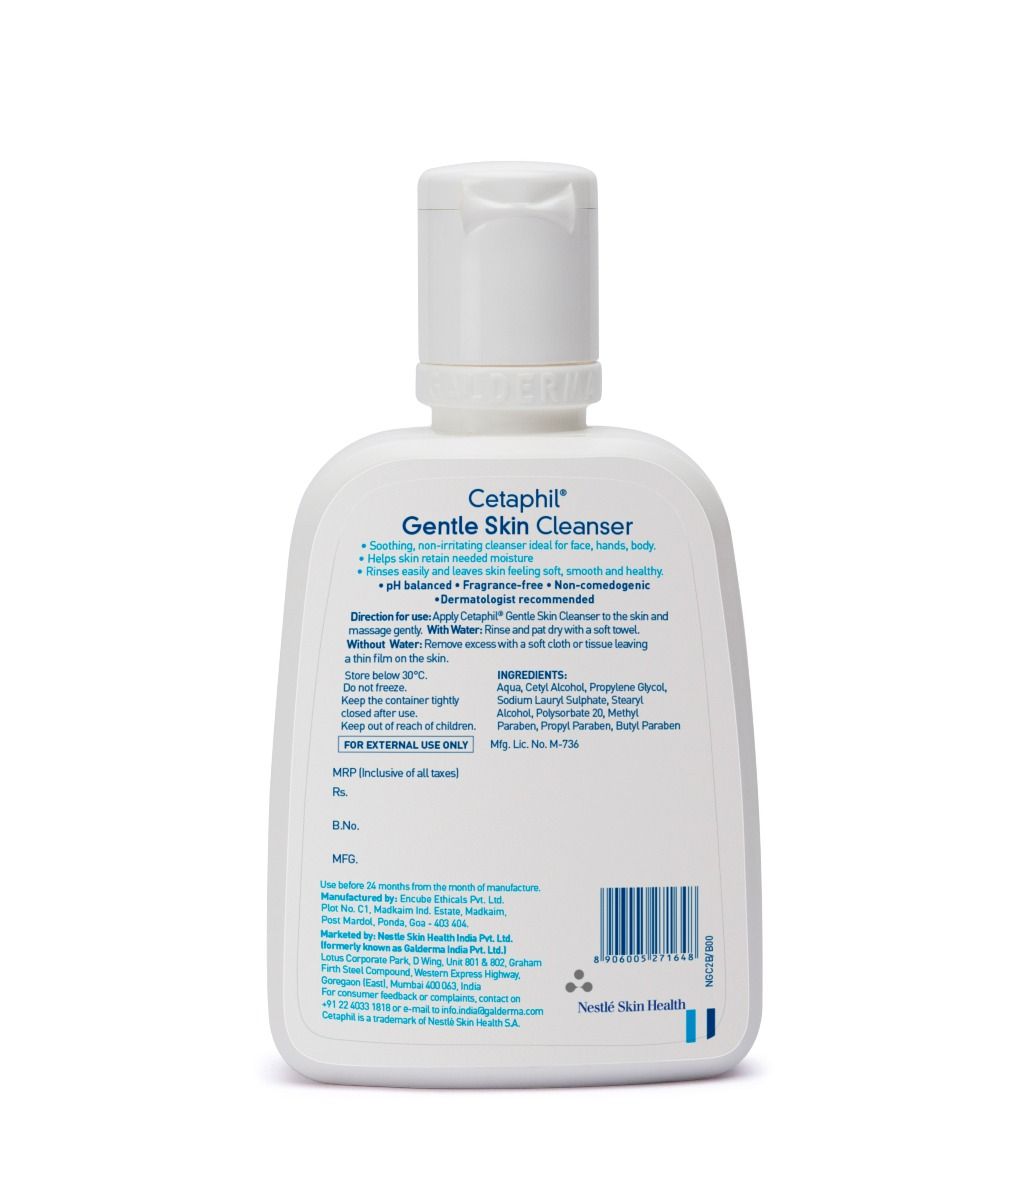 Cetaphil Gentle Skin Cleanser, 125 ml, Pack of 1 